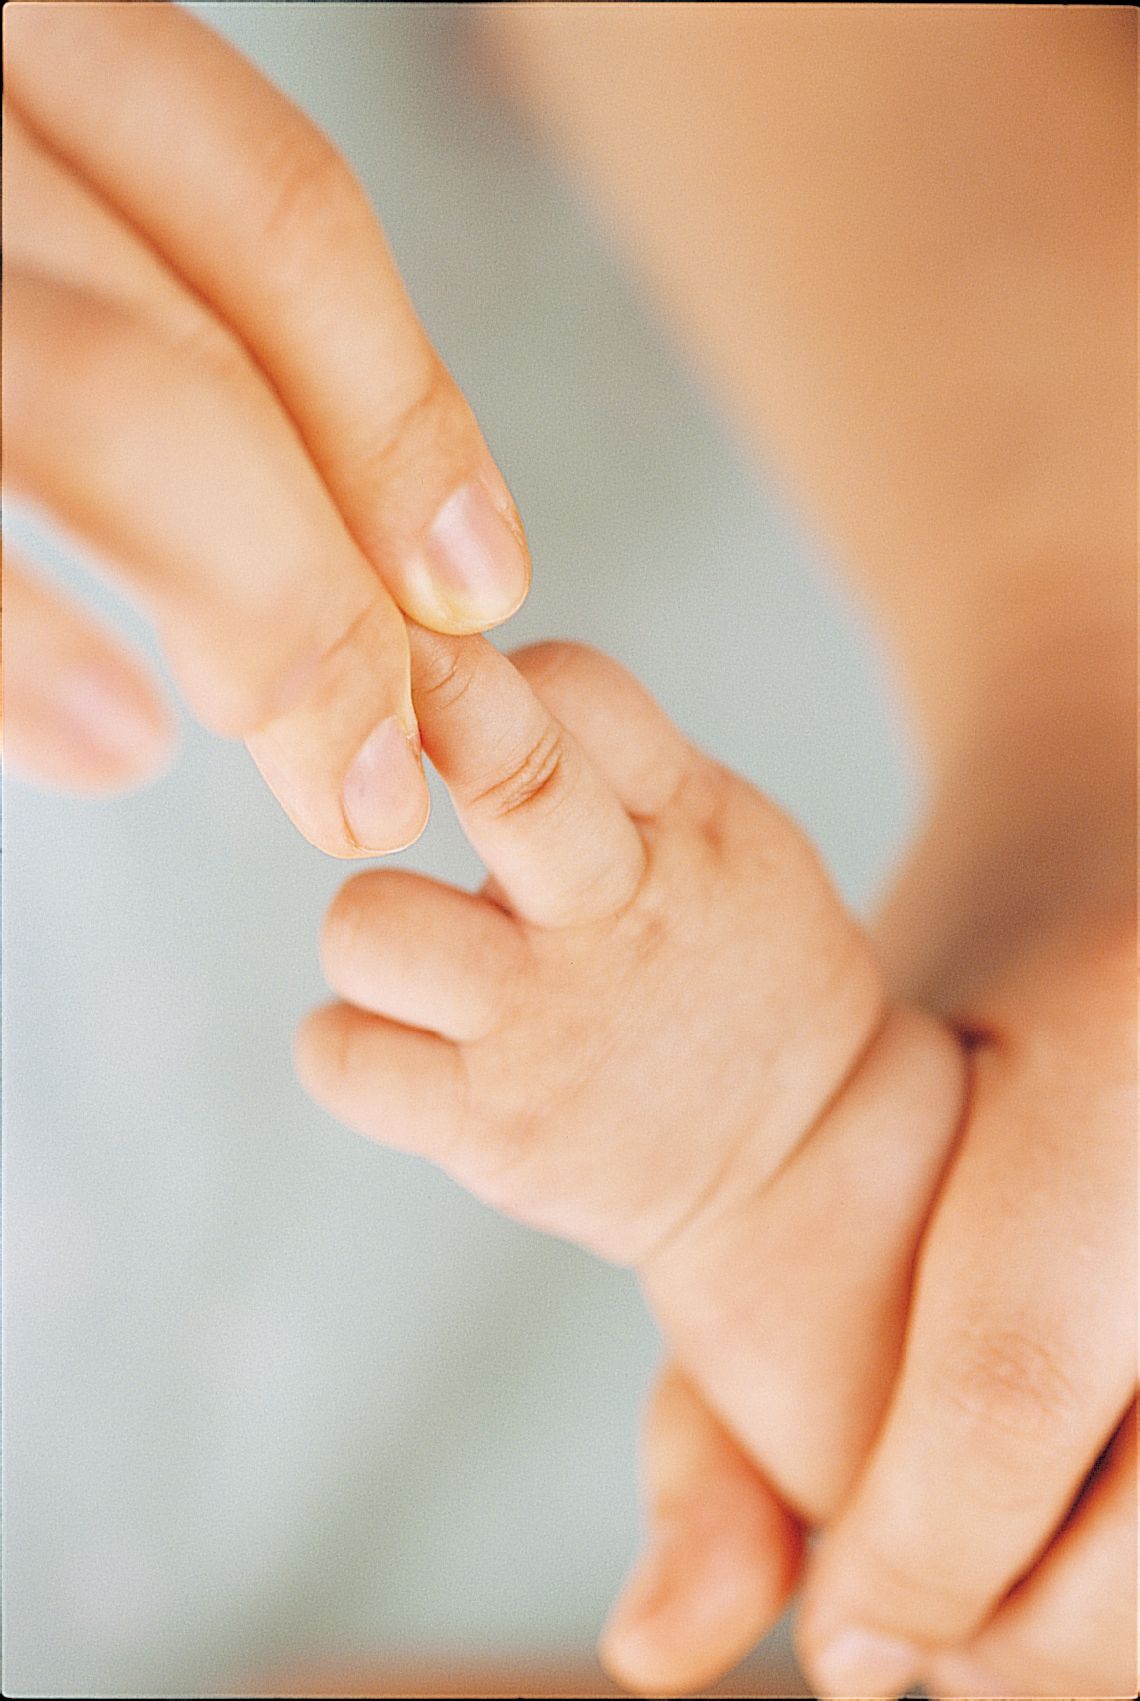 嬰兒的手圖片素材-JPG圖片尺寸6720 × 4480px-高清圖案501013395-zh.lovepik.com